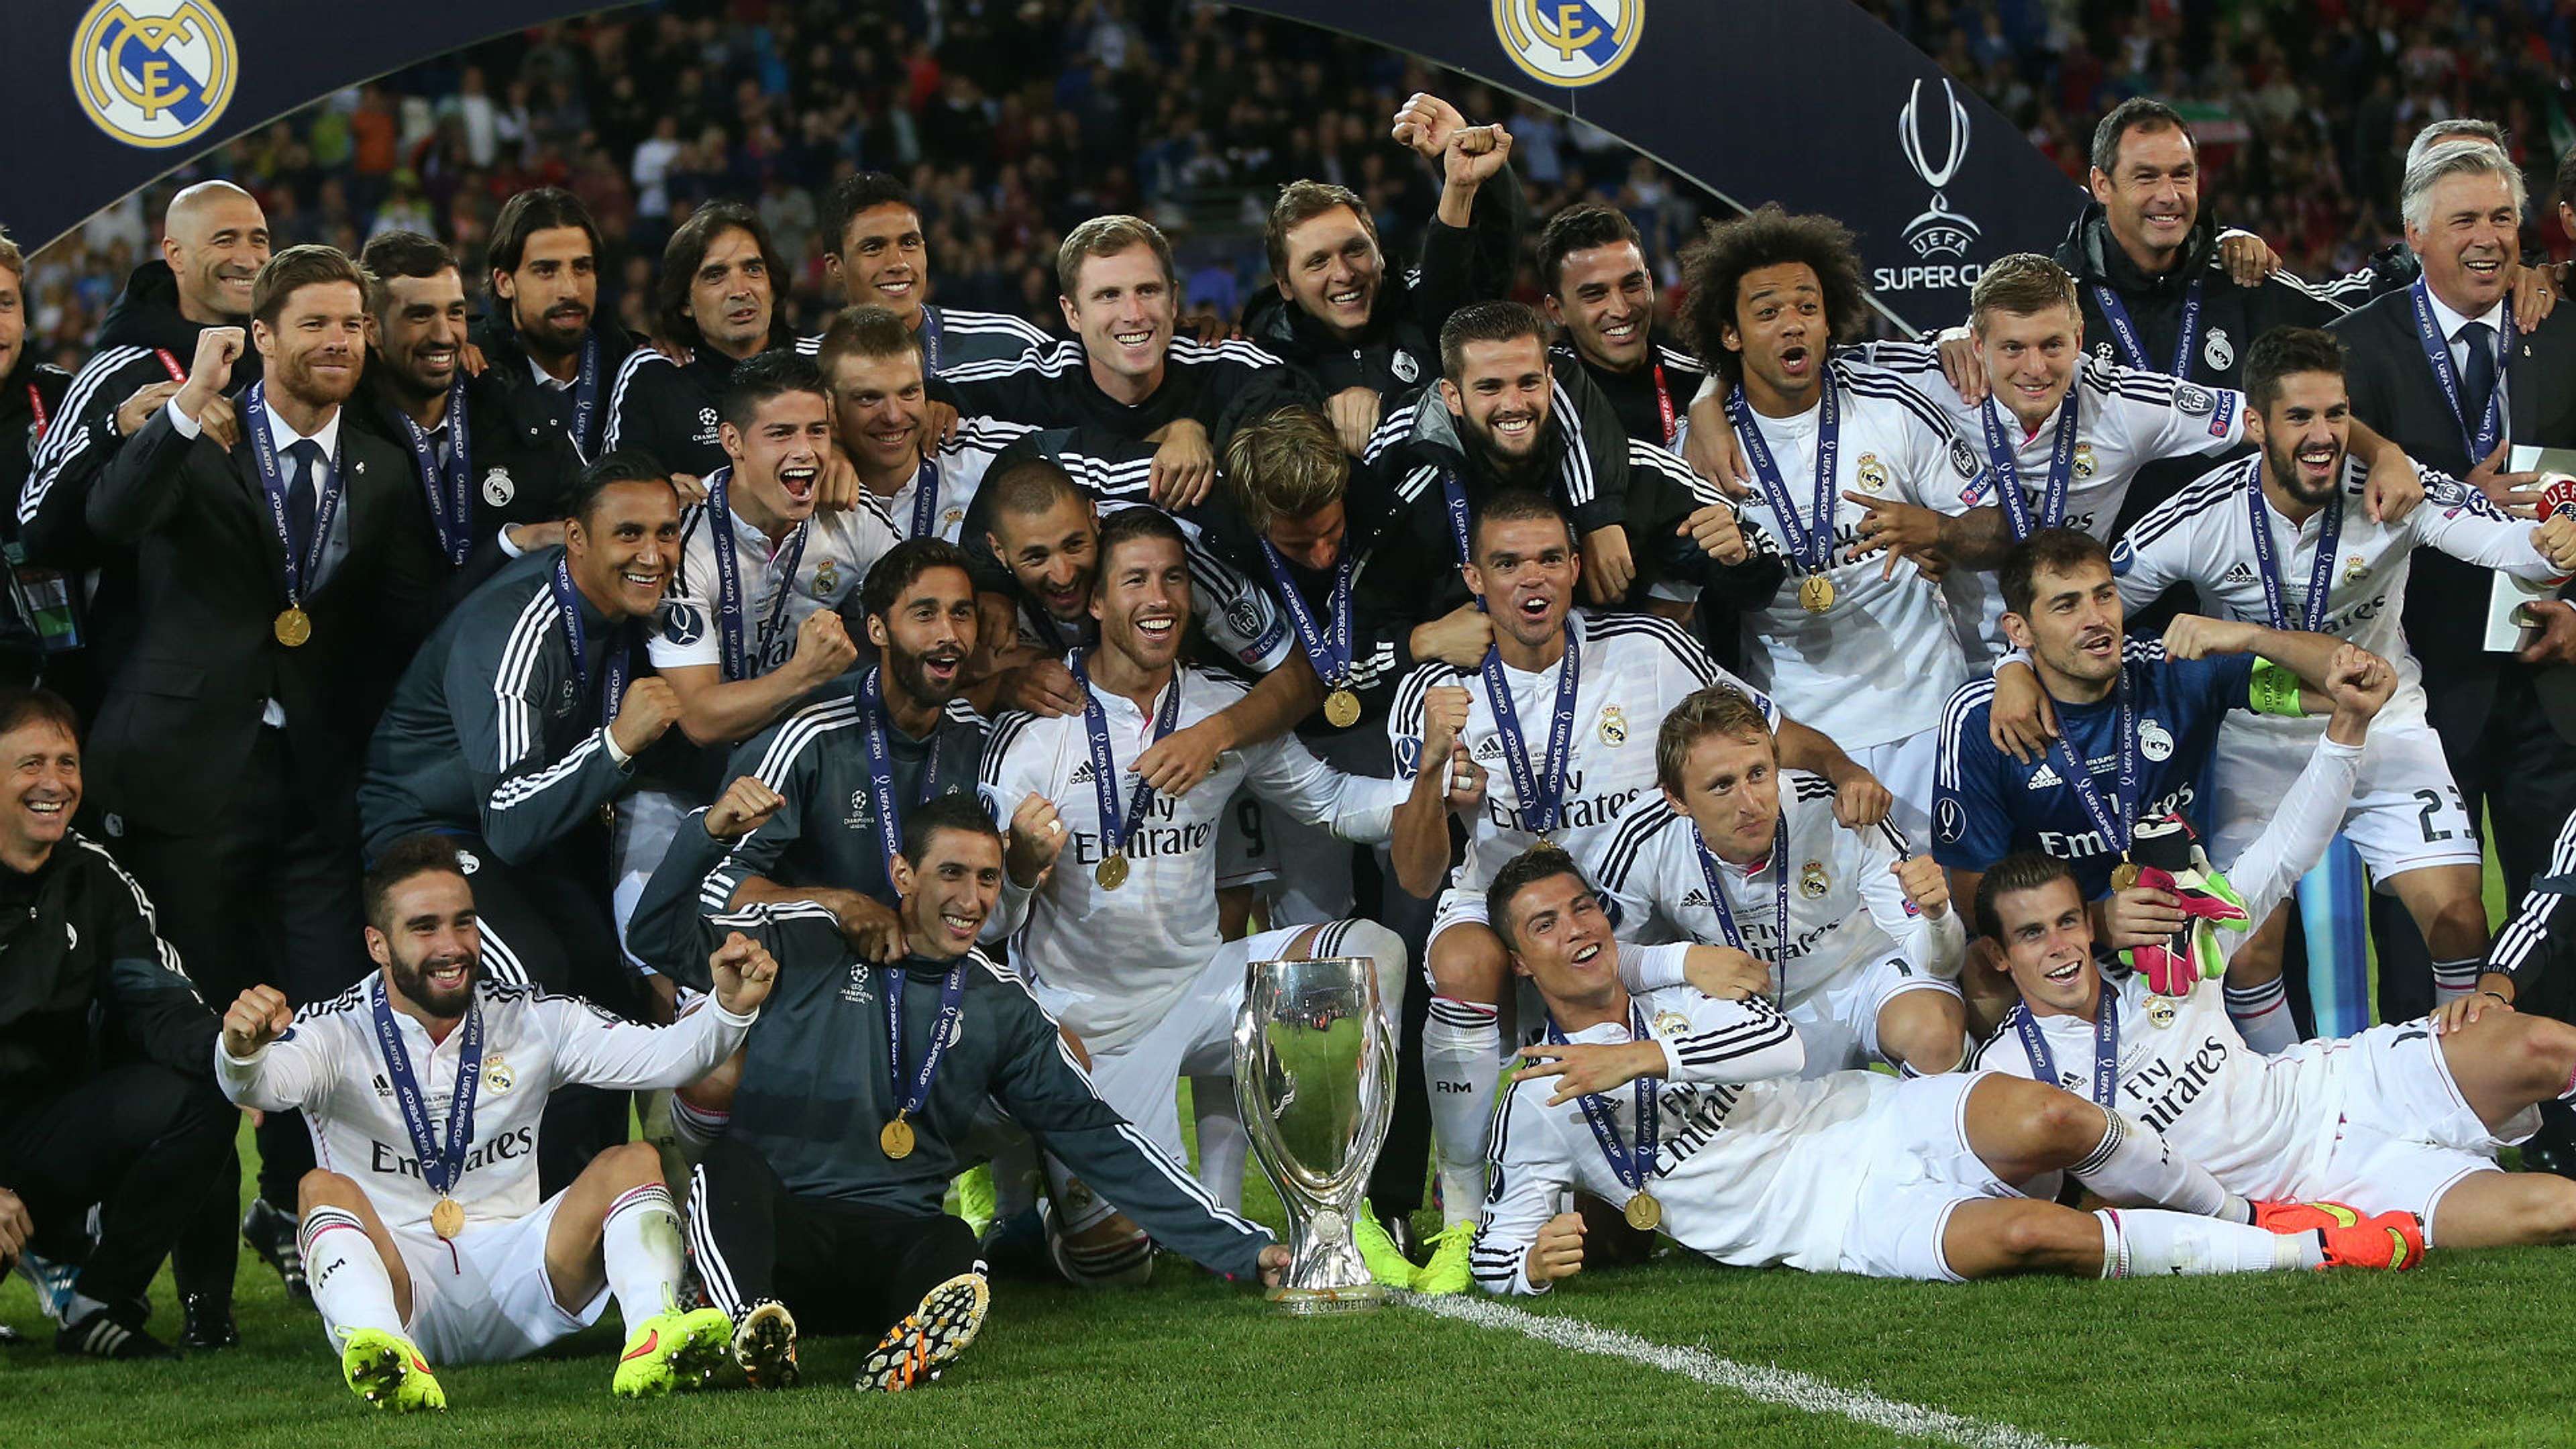 Carlo Ancelotti Real Madrid UEFA SuperCup 2014